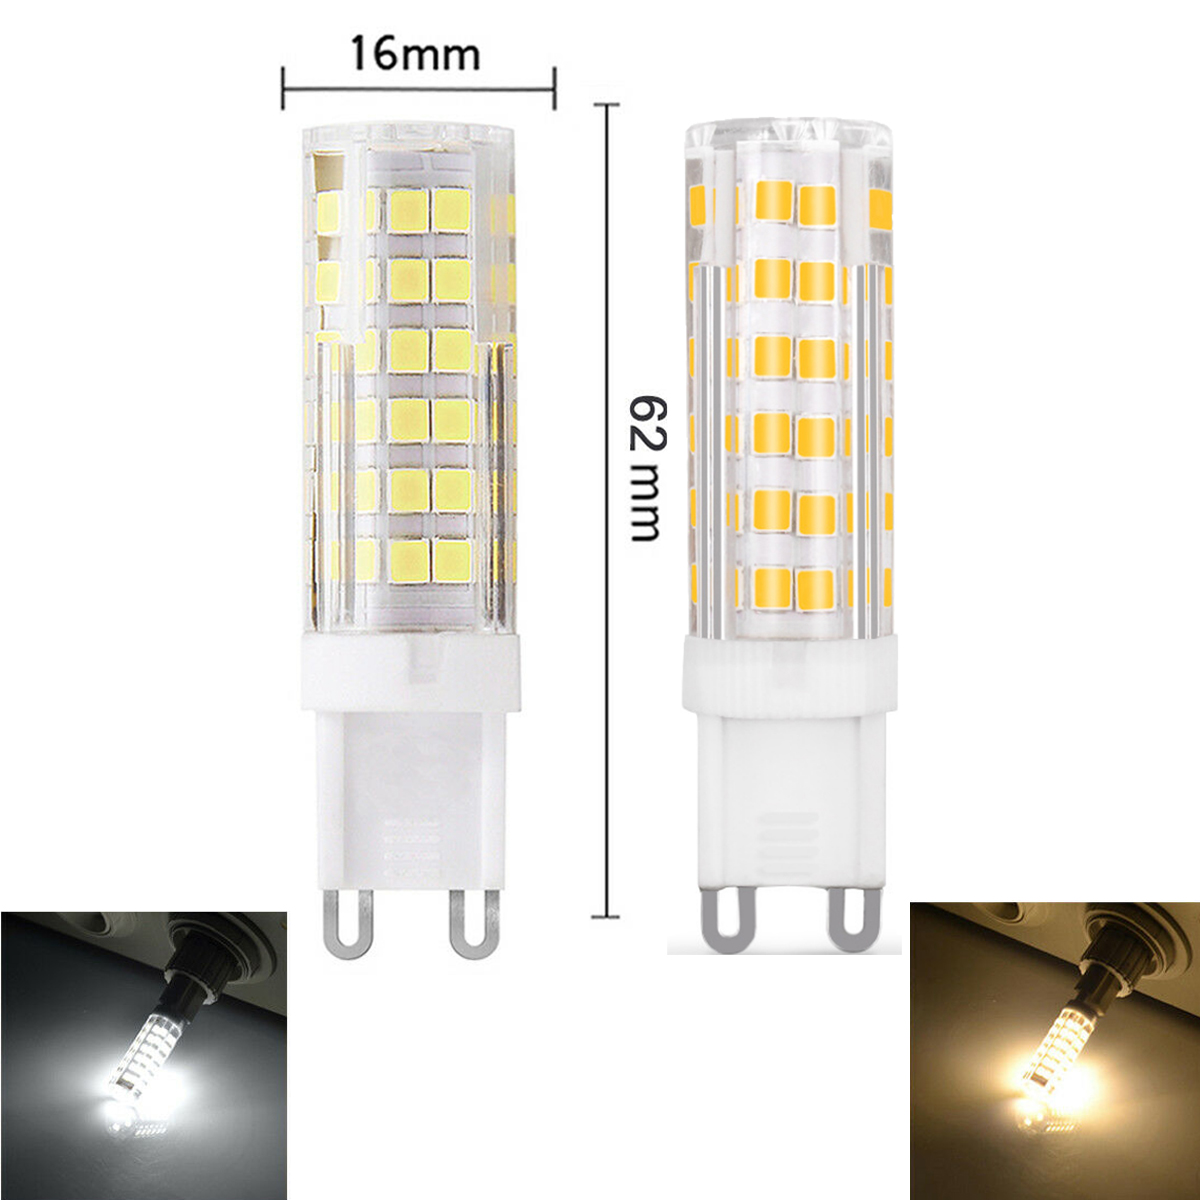 Ampoule LED SMD 220 pour remplacer les lampes halogènes, G4, 5W